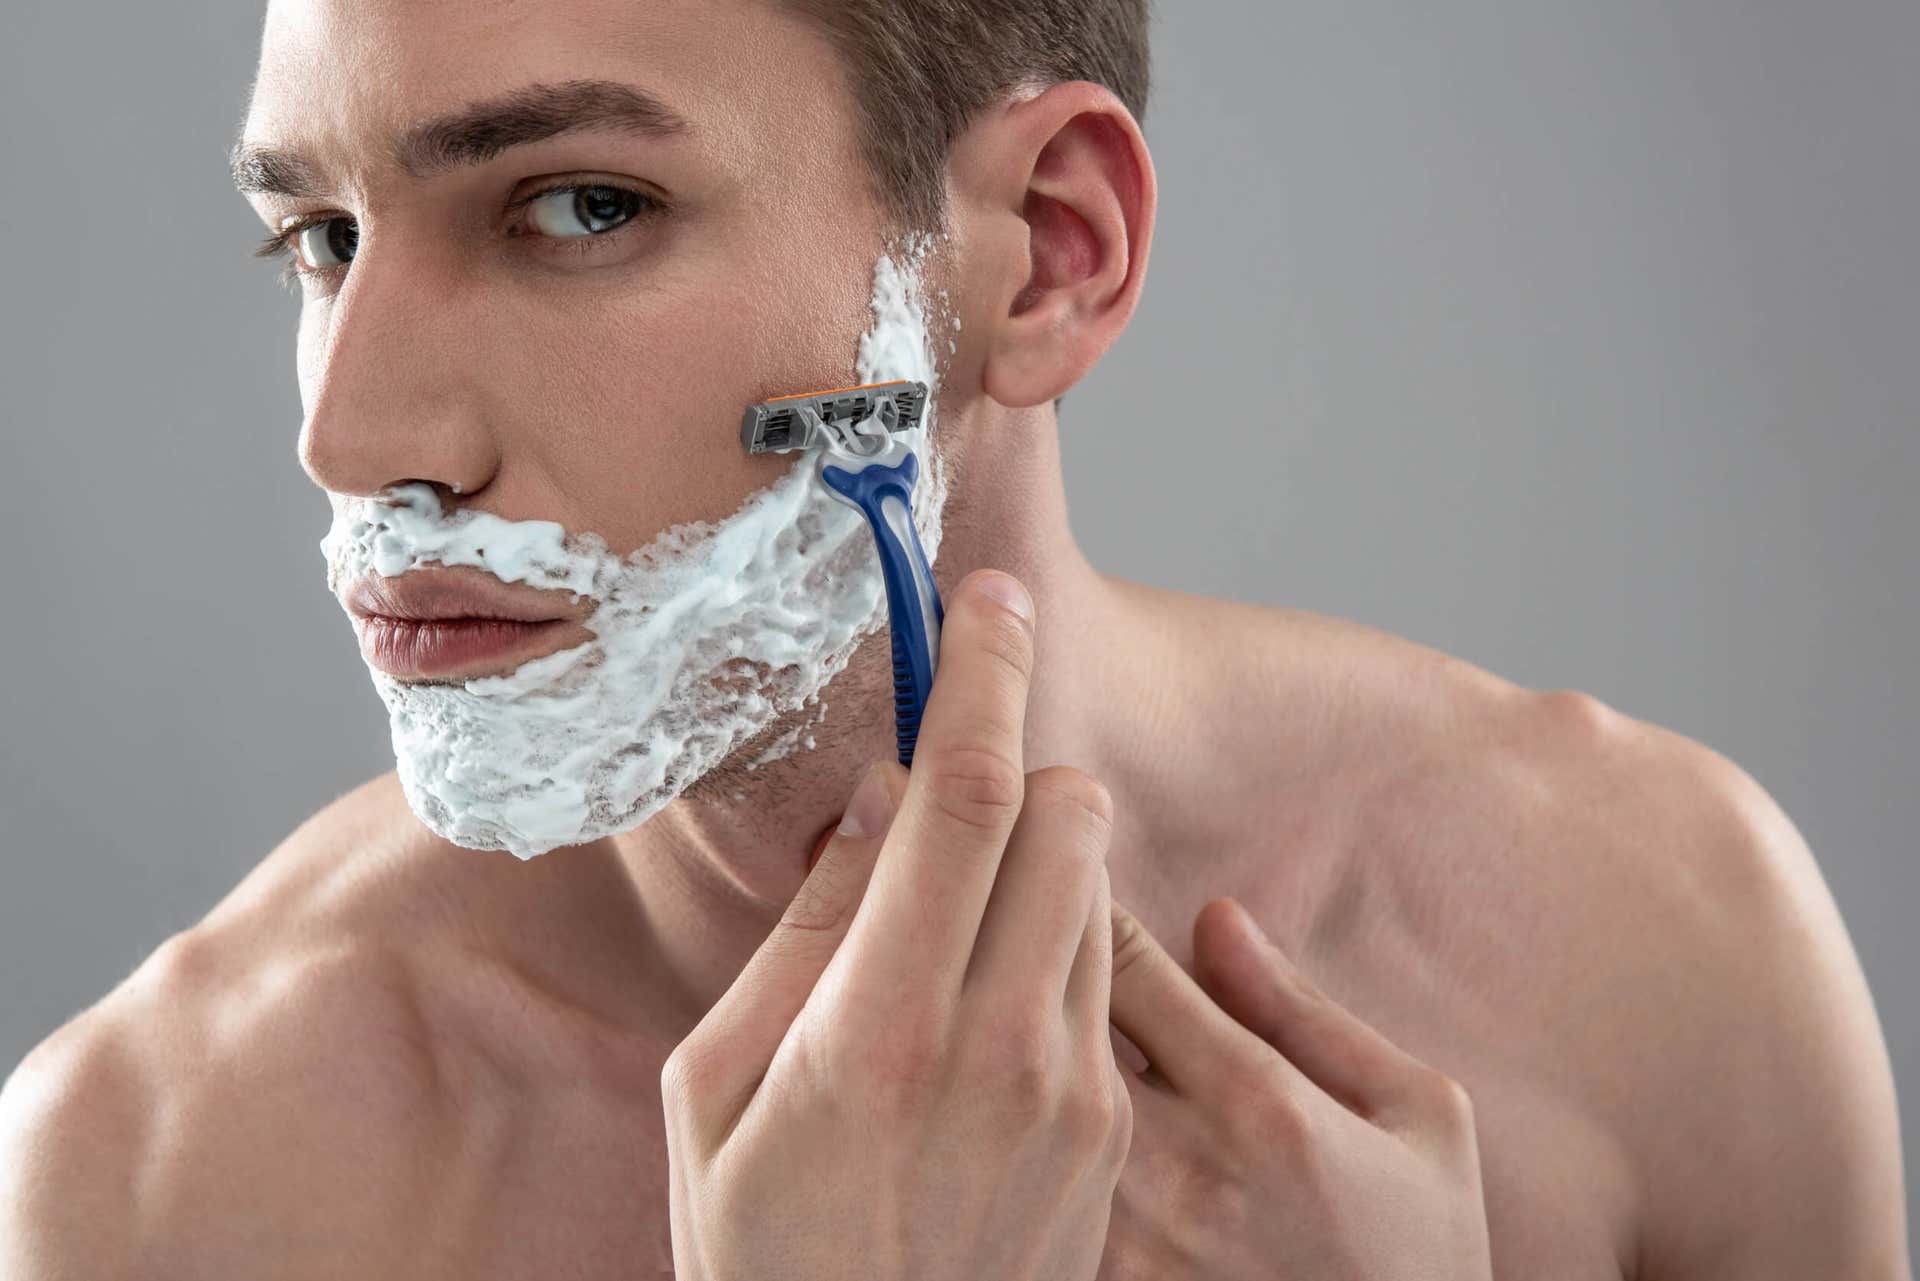 Πώς να ξυρίζεστε χωρίς να ερεθίζετε το δέρμα σας